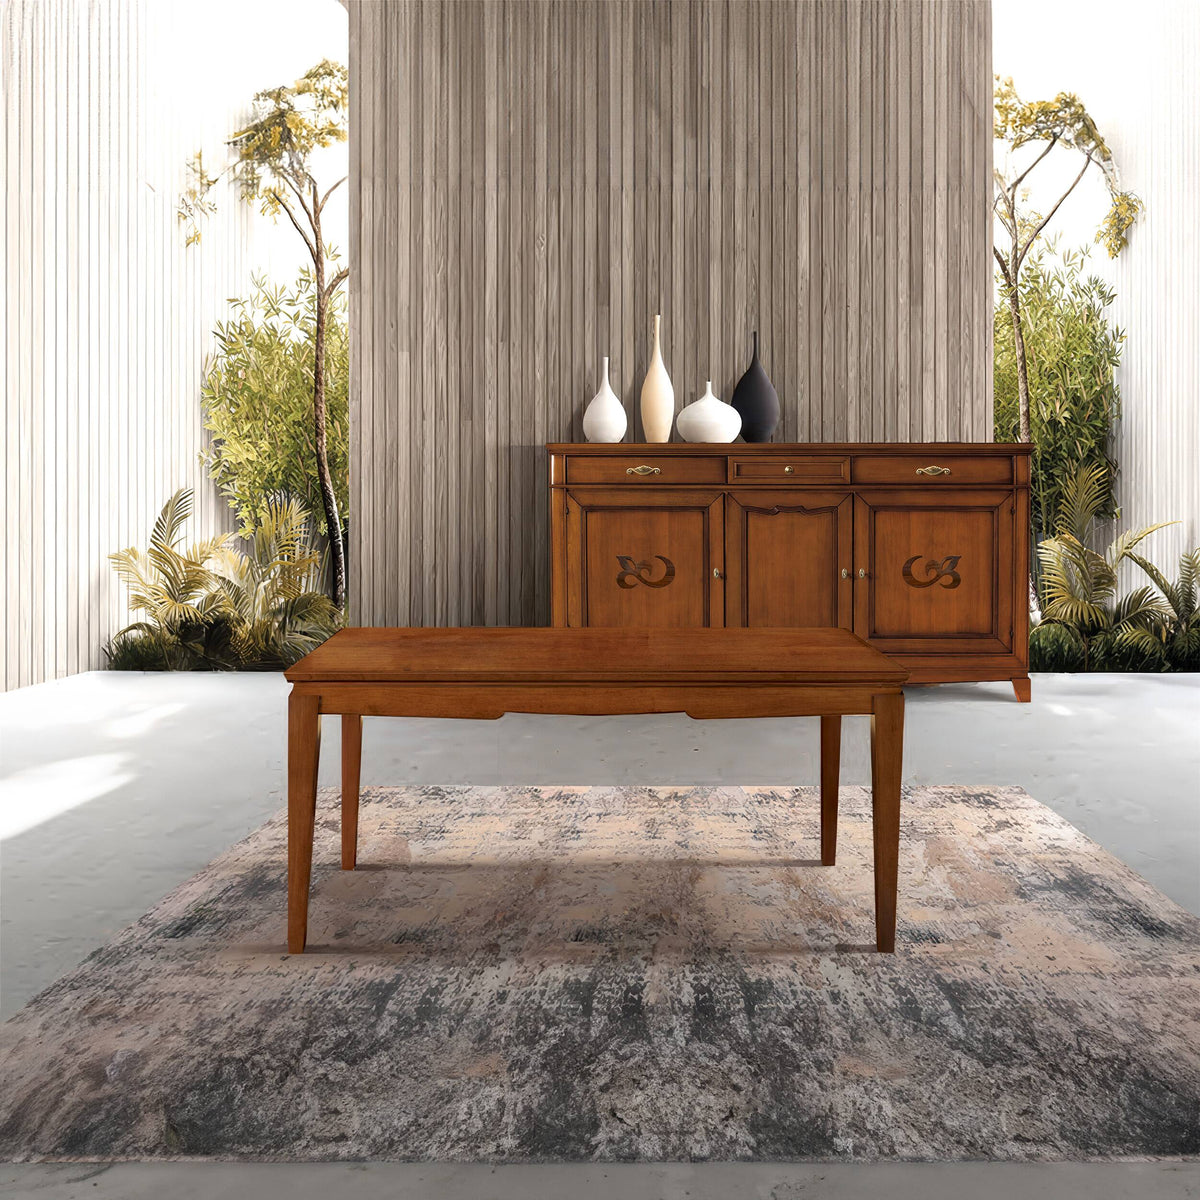 Classic Extendable Rectangular Table L 160-240 P 90 cm in Wood Arte D'Este Piombini Collection